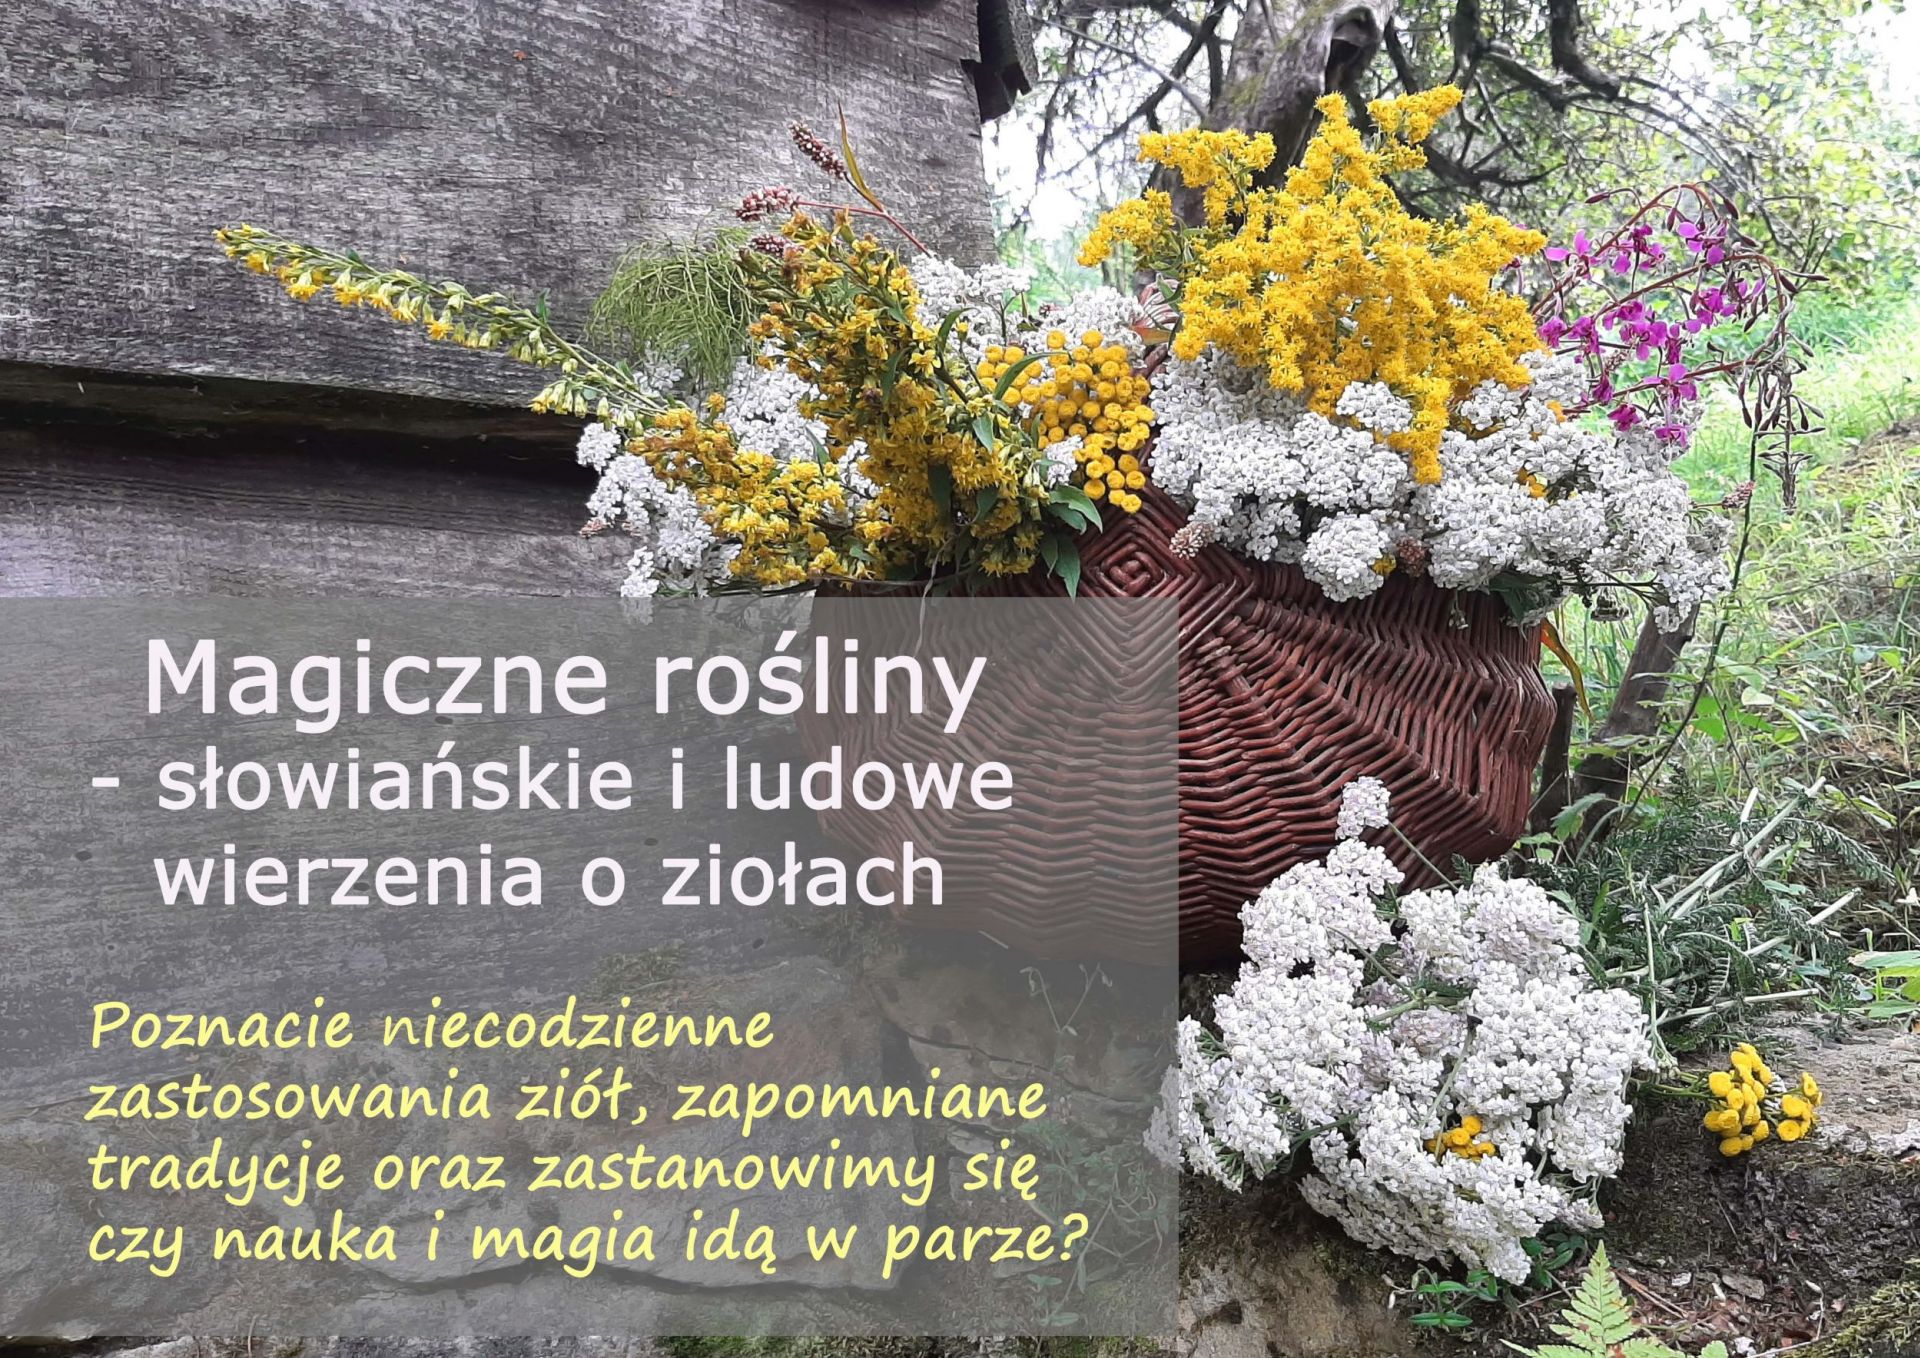 Magiczne rośliny - słowiańskie i ludowe wierzenia o ziołach - magiczne_rosliny_slowianskie_i_w_ludowych_wierzeniach-min.jpg